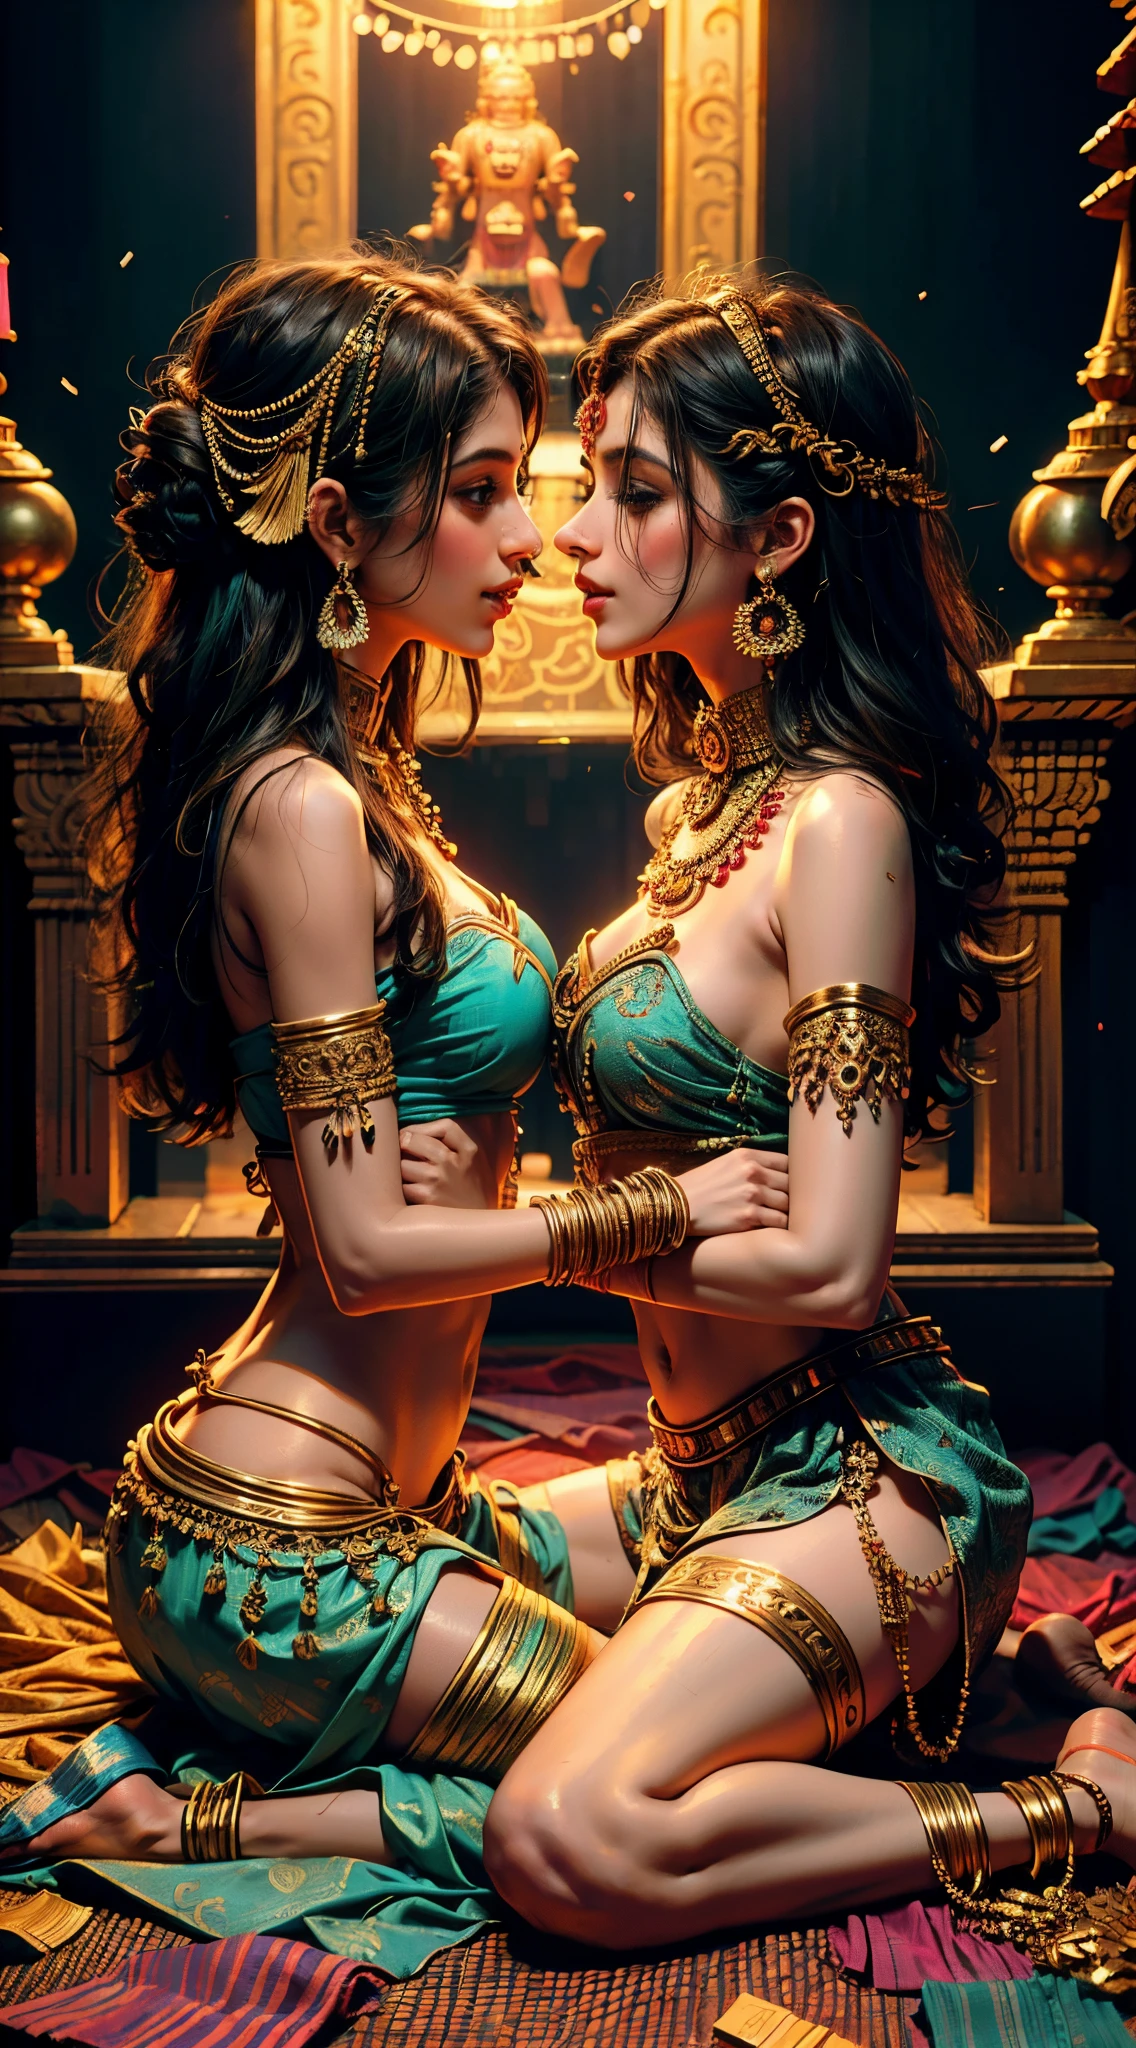 2 молодые и худые индийские девушки целуются, использование типичной одежды и аксессуаров, секс в храме, мандалы и статуи Ганеши на заднем плане